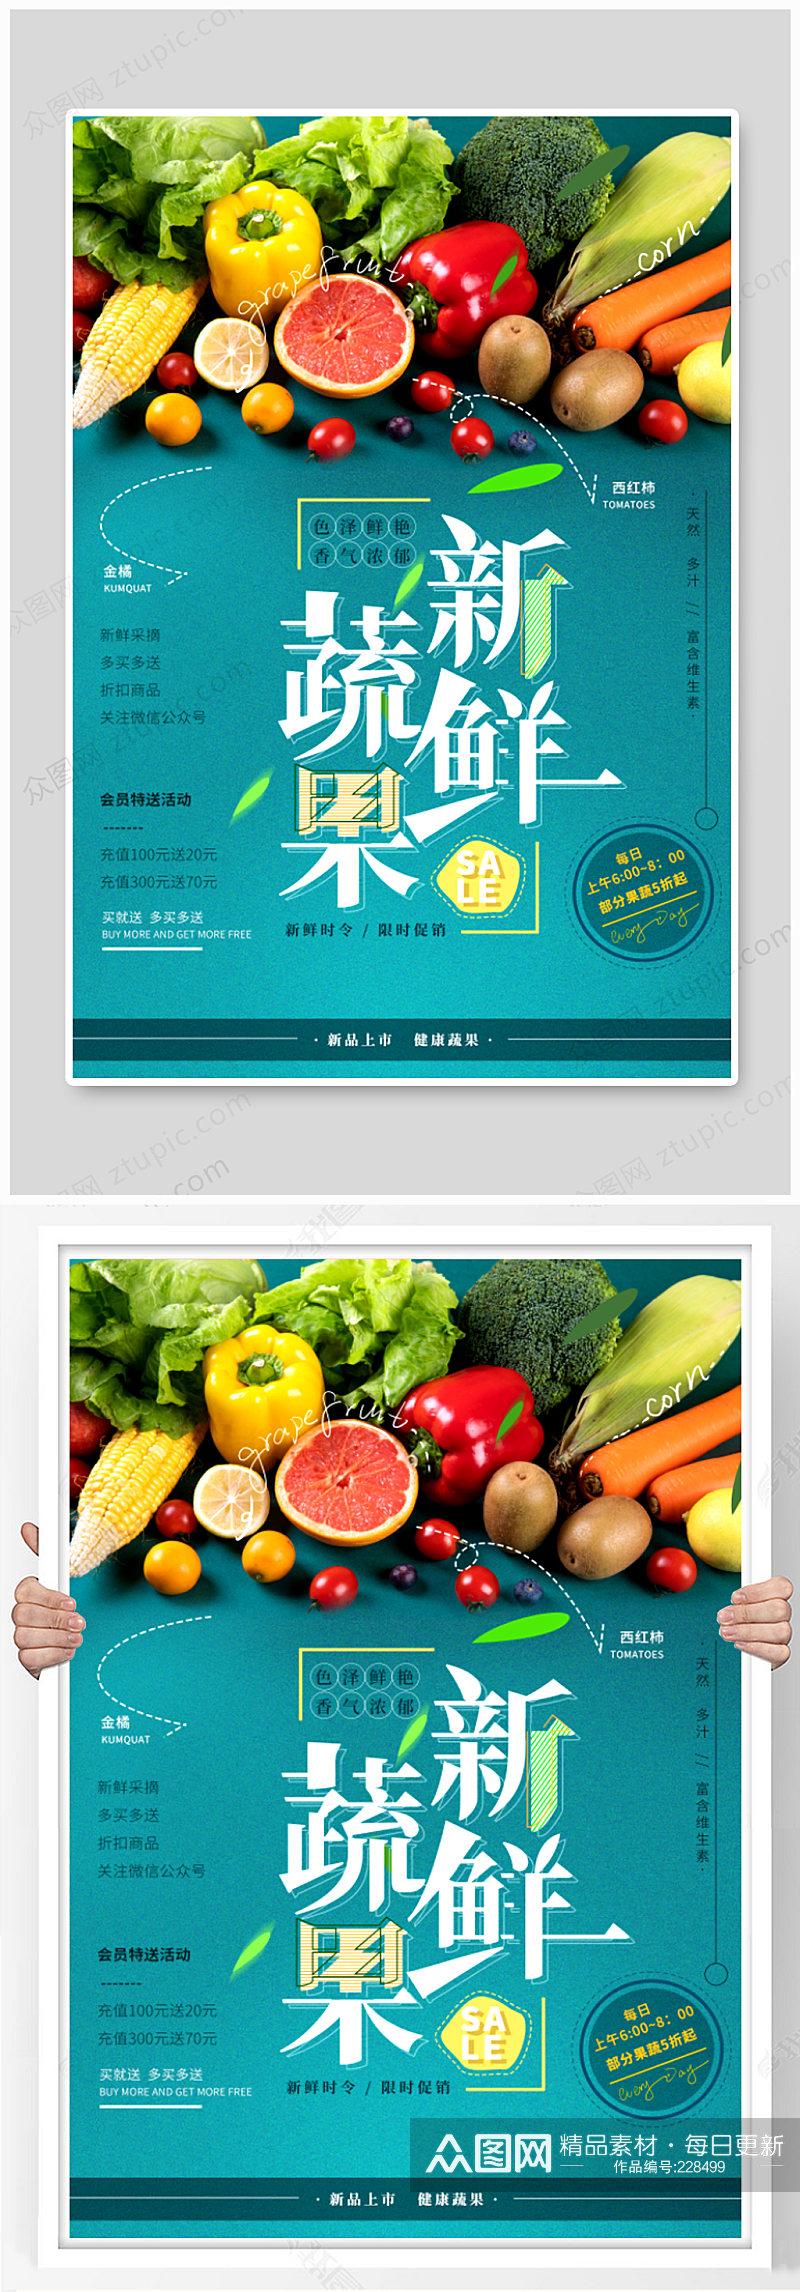 新鲜蔬果促销海报超市海报素材